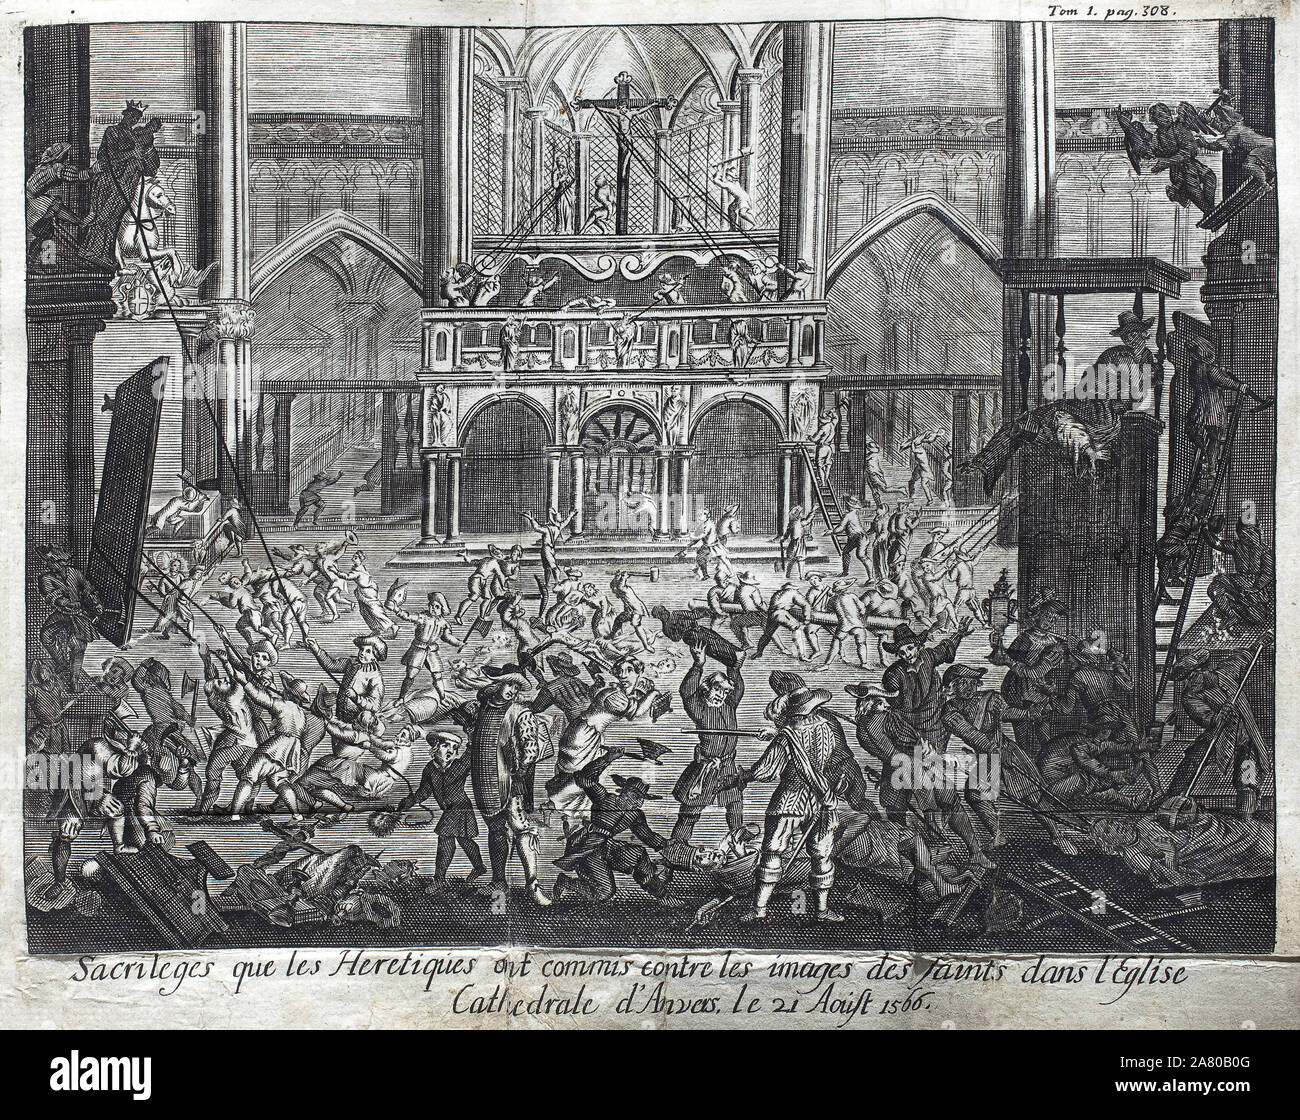 Sacrileges que les heretiques ont commis contre les images saintes dans l'eglise cathedrale d'Anvers (Pays-Bas, Pays Bas), le 21 aout 1566, episode de Stock Photo